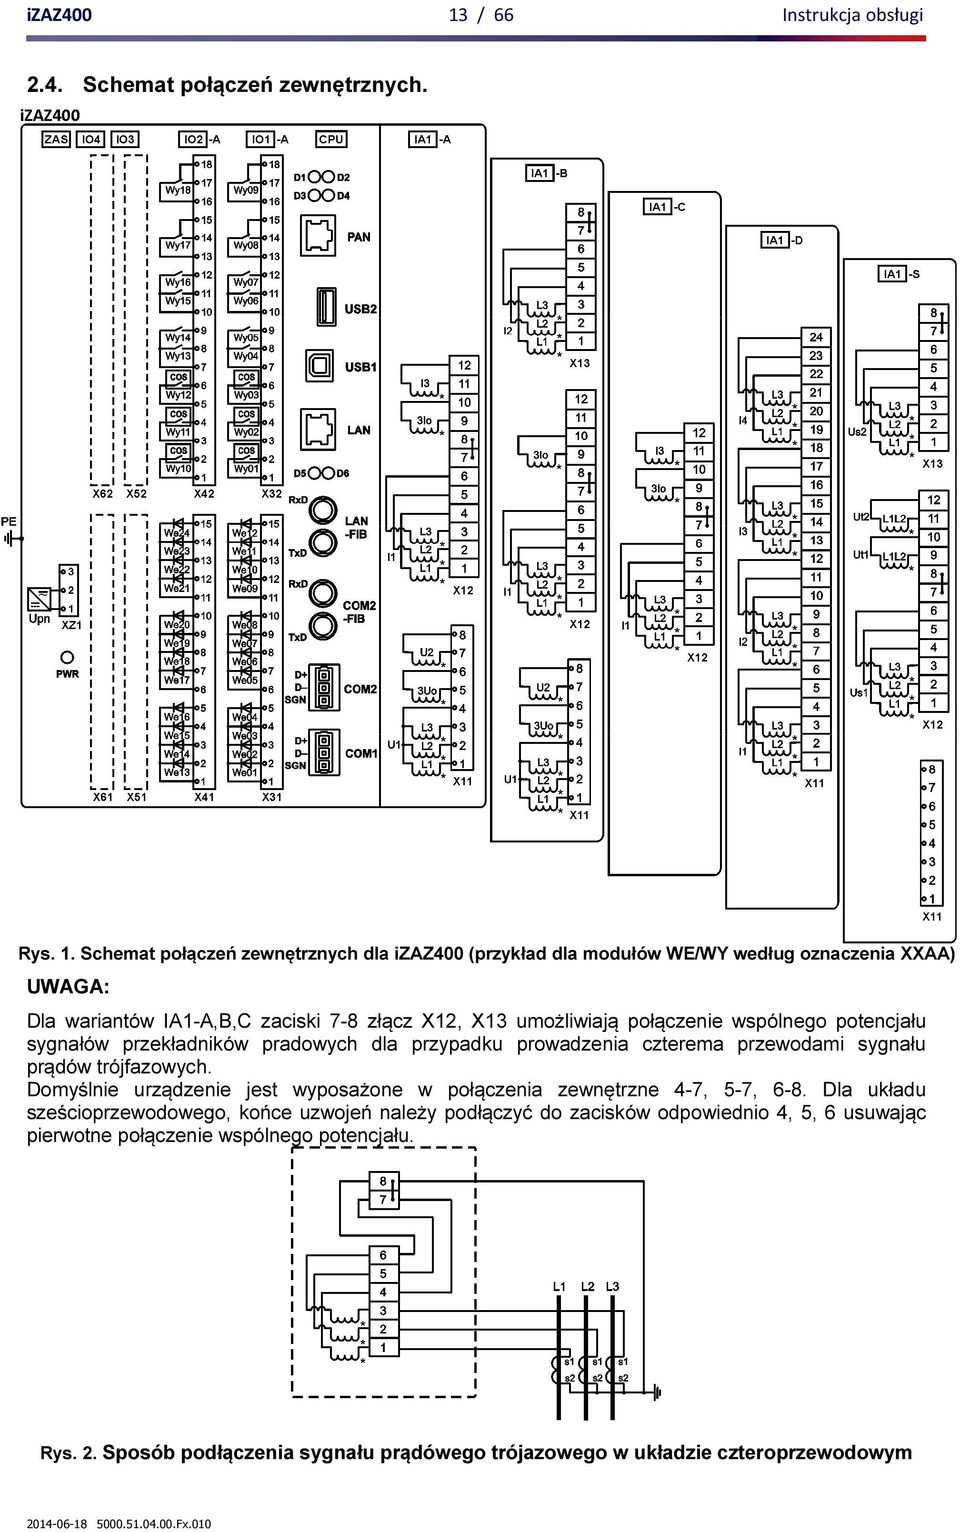 Schemat połączeń zewnętrznych dla izaz400 (przykład dla modułów WE/WY według oznaczenia XXAA) UWAGA: Dla wariantów IA1-A,B,C zaciski 7-8 złącz X12, X13 umożliwiają połączenie